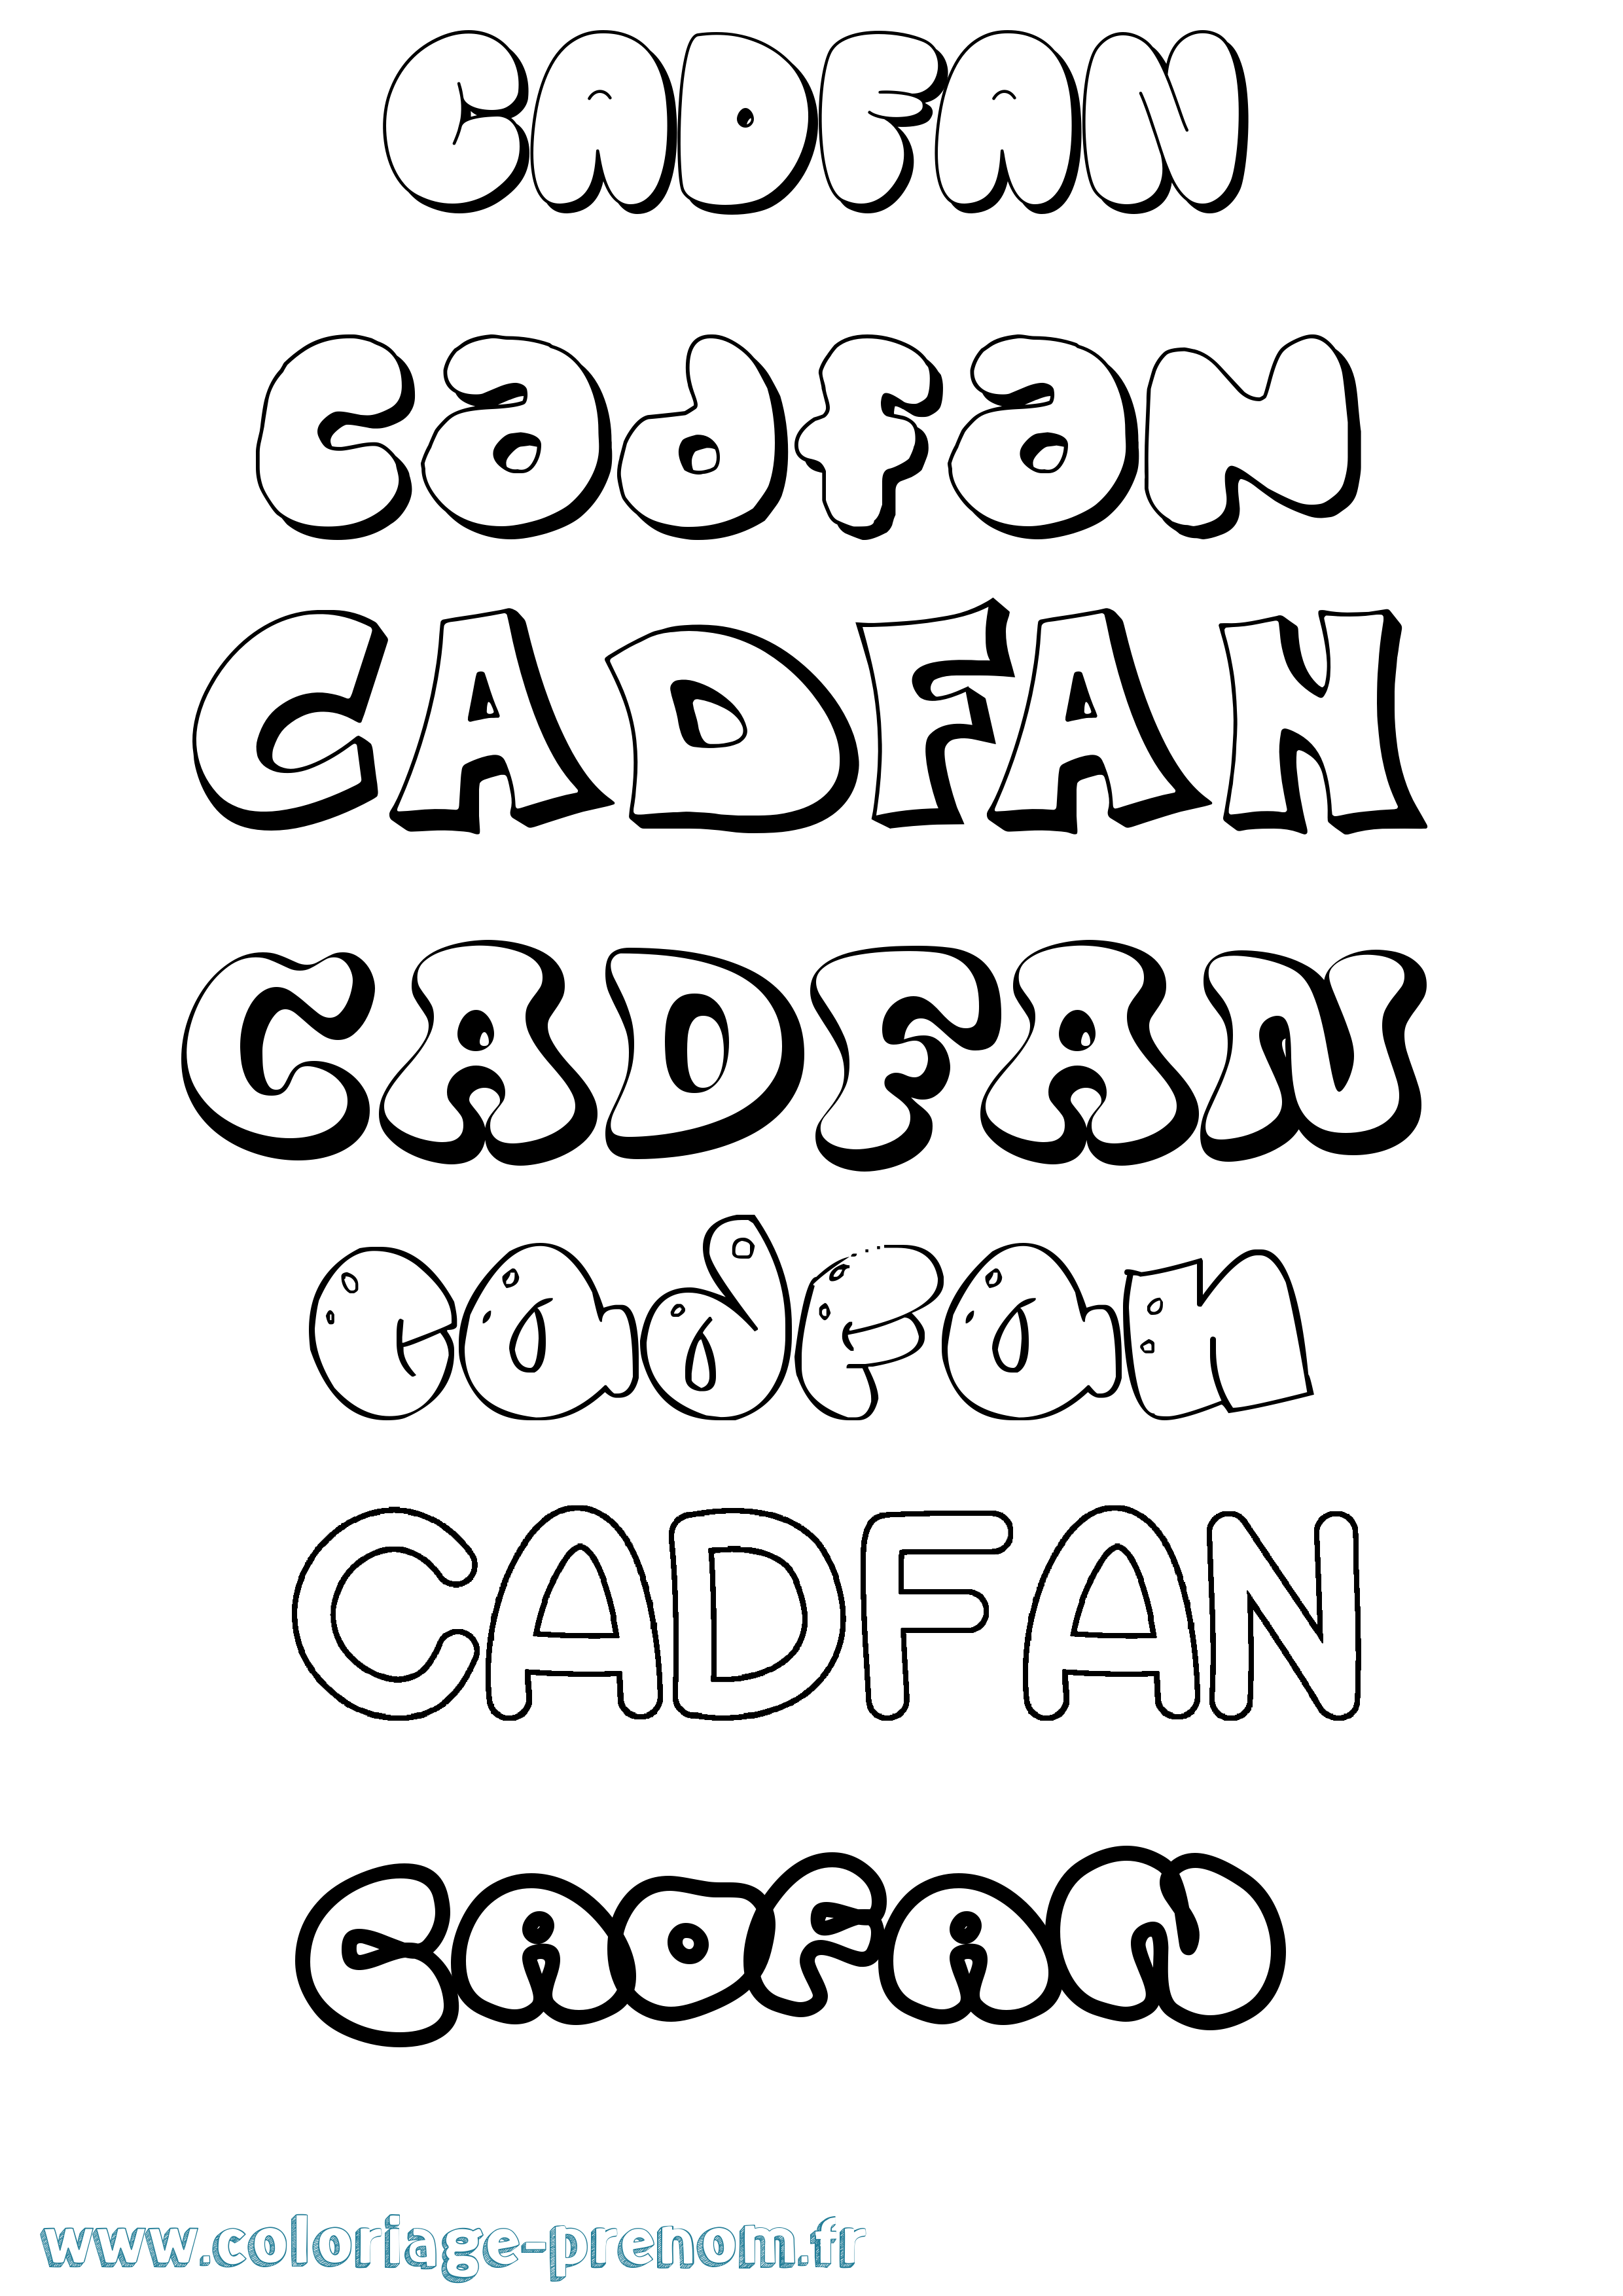 Coloriage prénom Cadfan Bubble